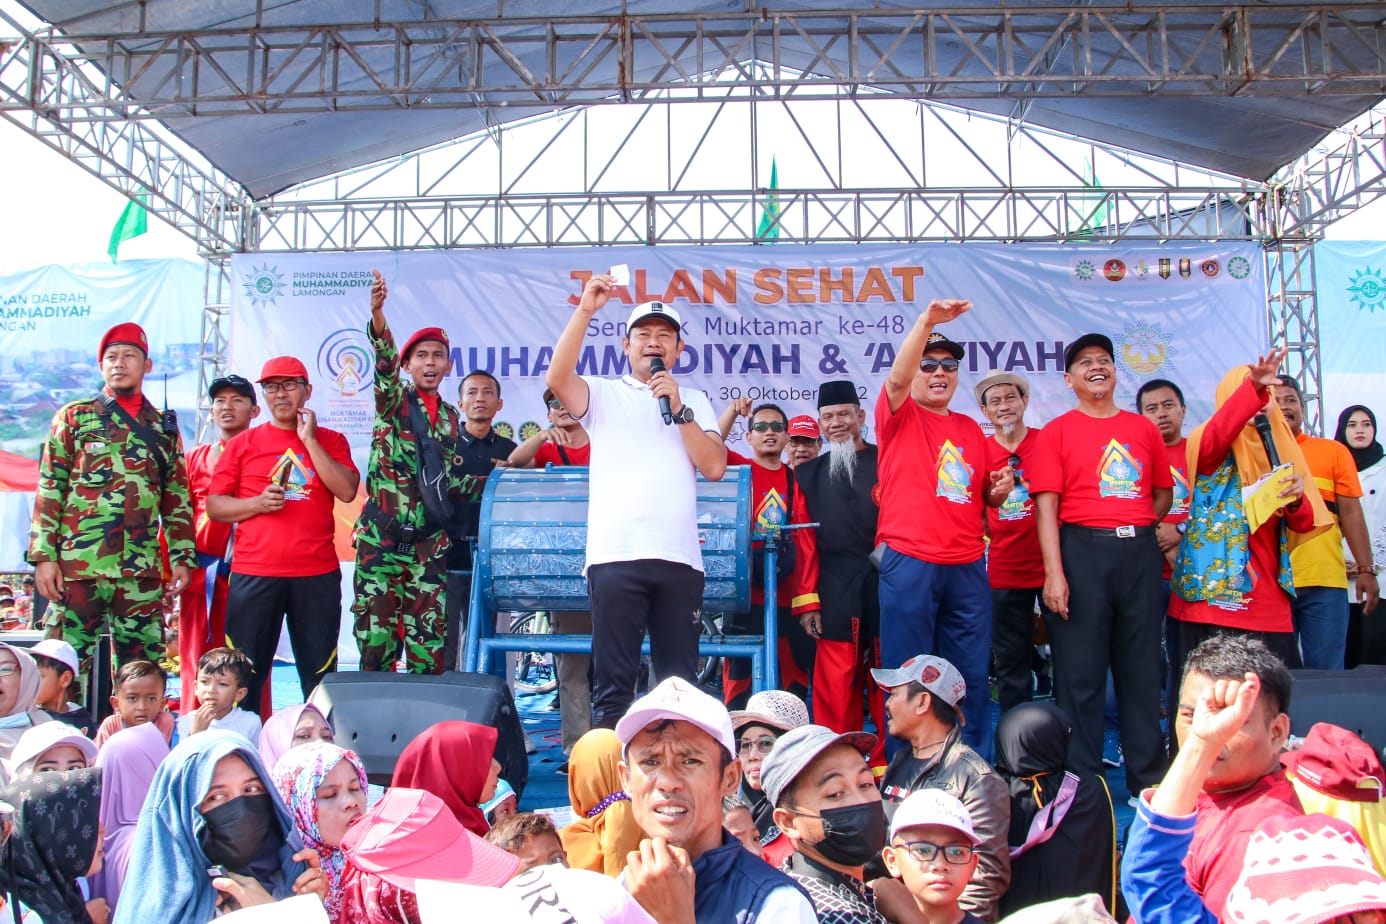 Semarakkan Muktamar ke-48 Muhammadiyah dan Aisyiyah, Ribuan Warga Lamongan Ikuti Jalan Sehat